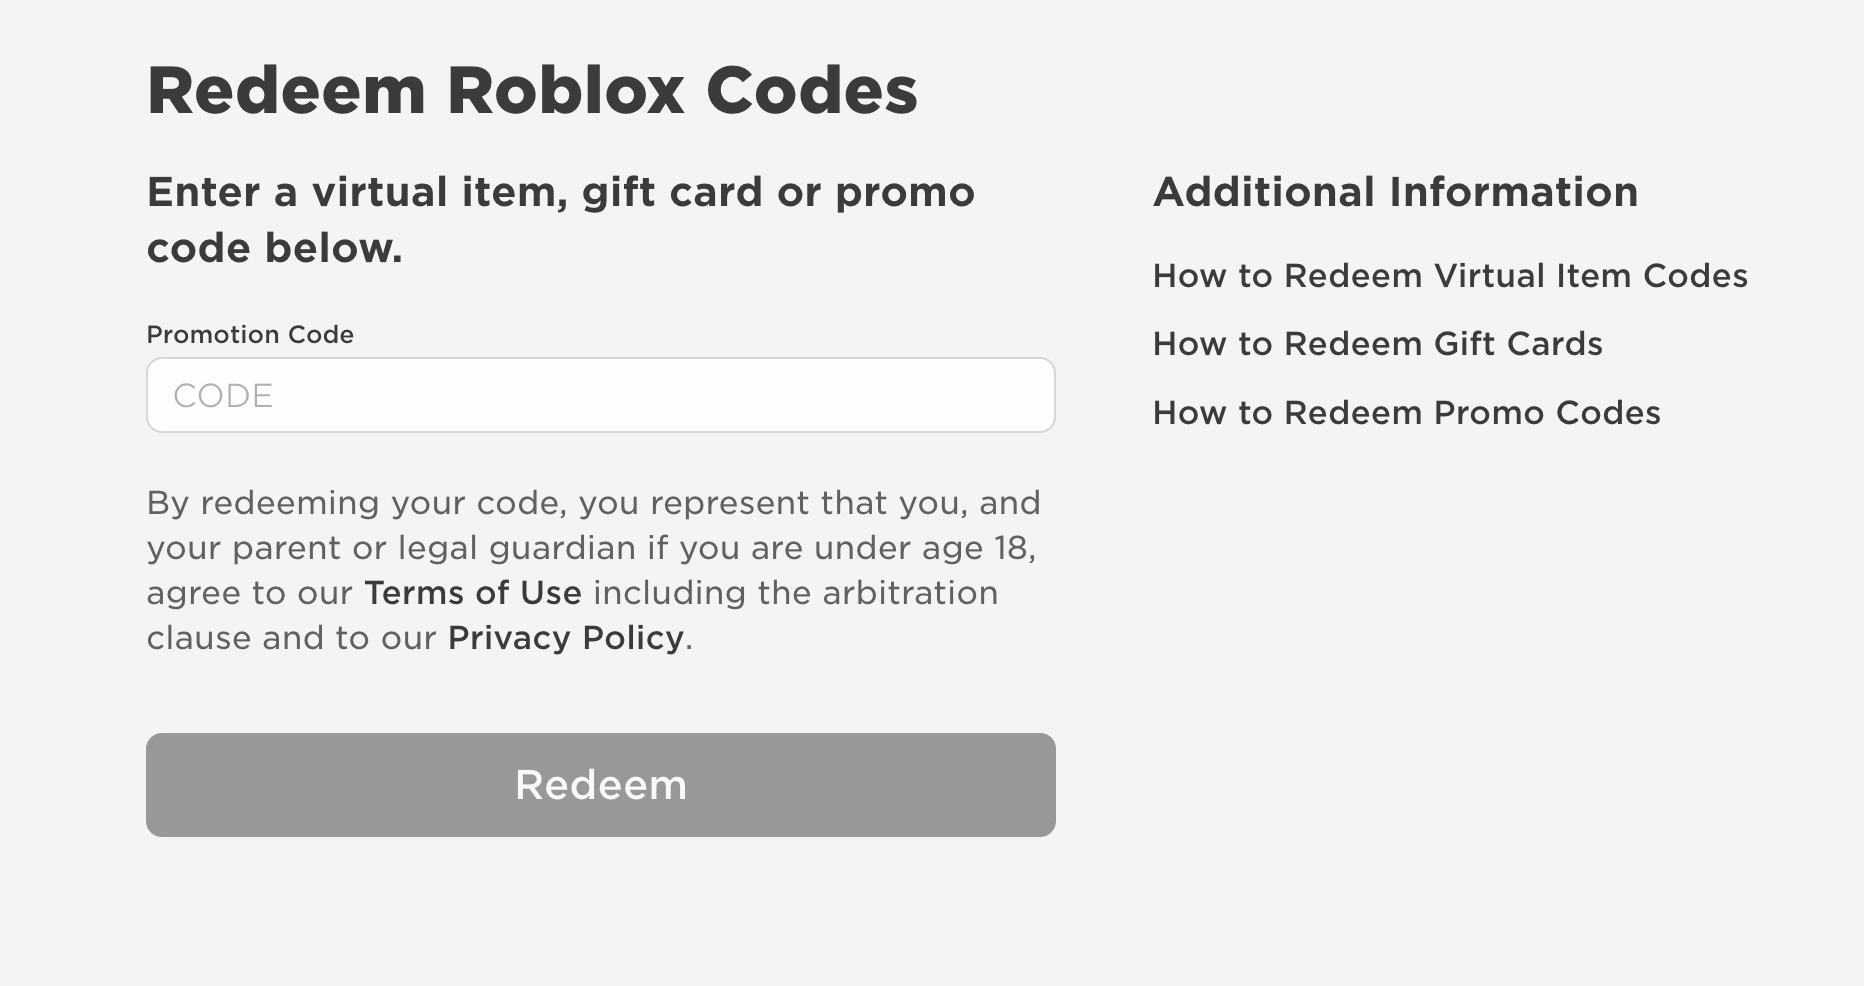 Код роблокс промокод. Roblox promocodes. Redeem Roblox codes. Roblox Promo codes redeem. Roblox.com/redeem.